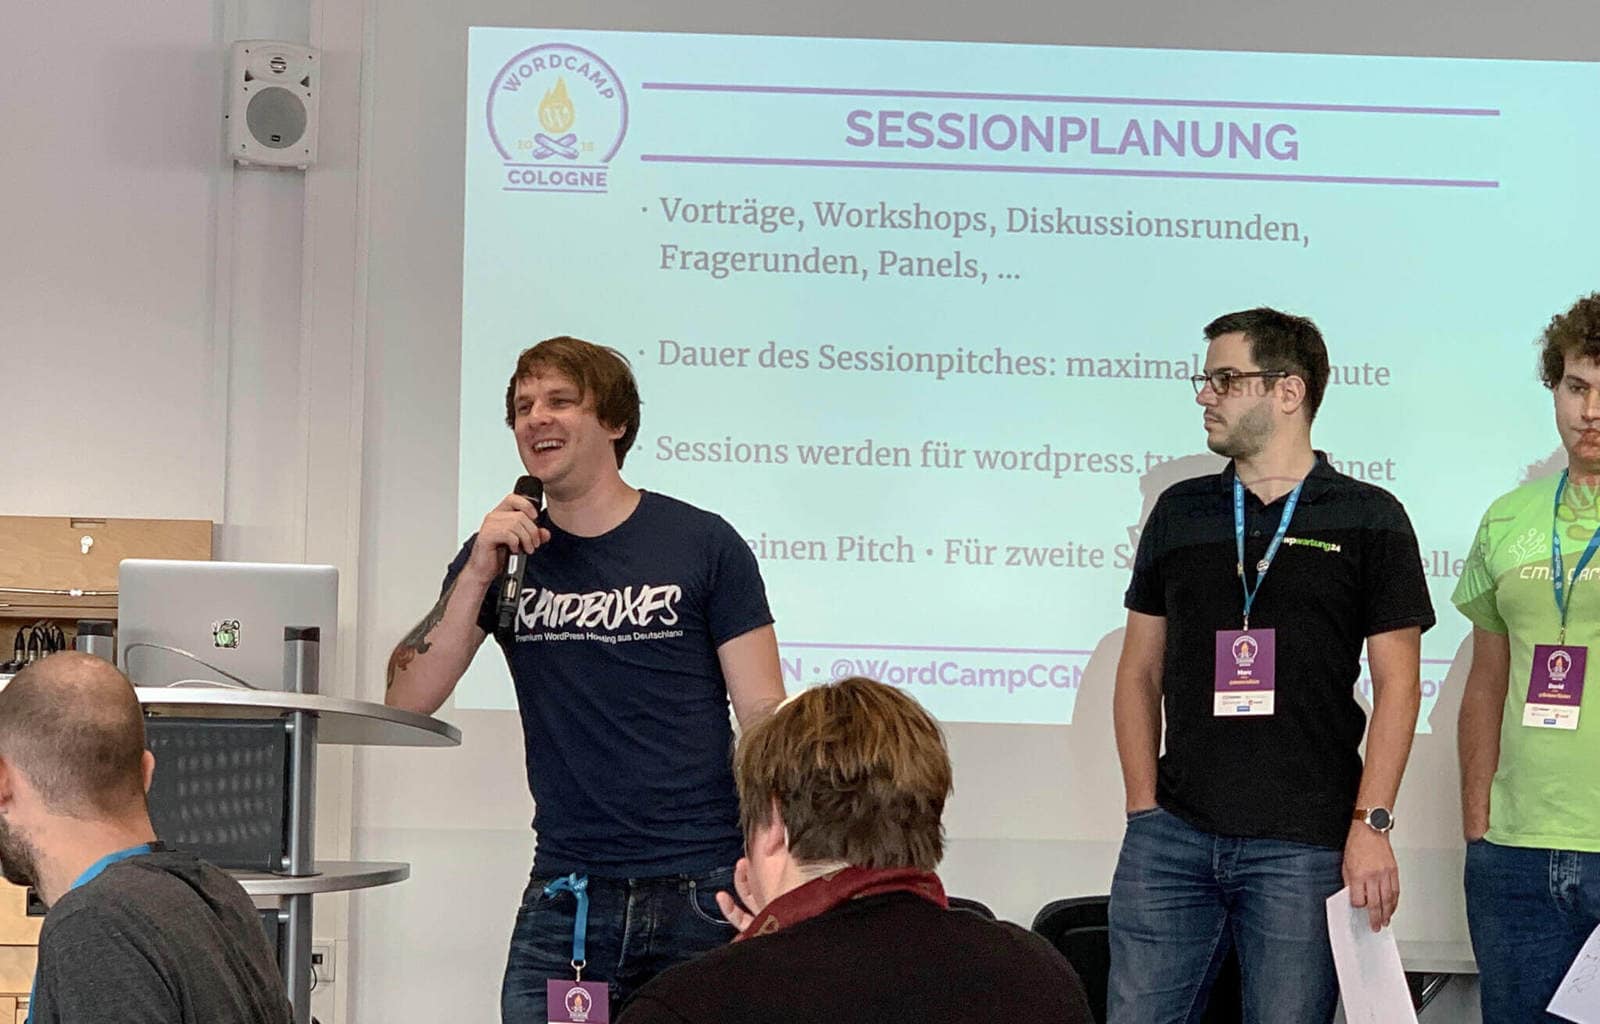 WordCamp di Colonia: Matthias von Raidboxes al pitch della sessione